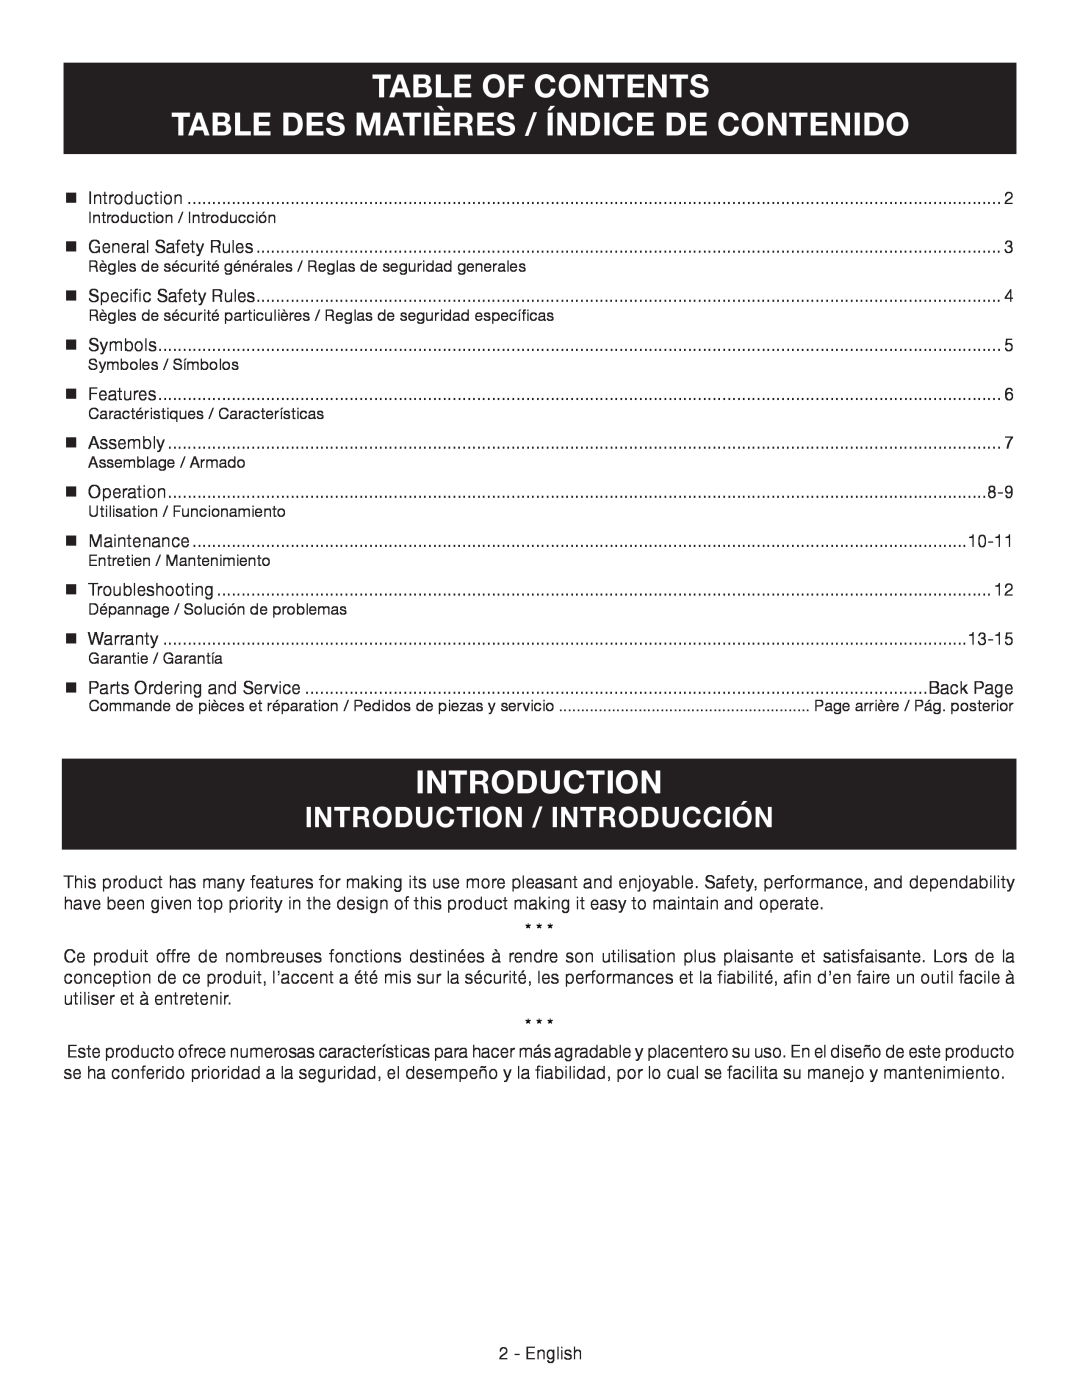 Ryobi RY09460 Table Of Contents Table Des Matières / Índice De Contenido, Introduction / Introducción 